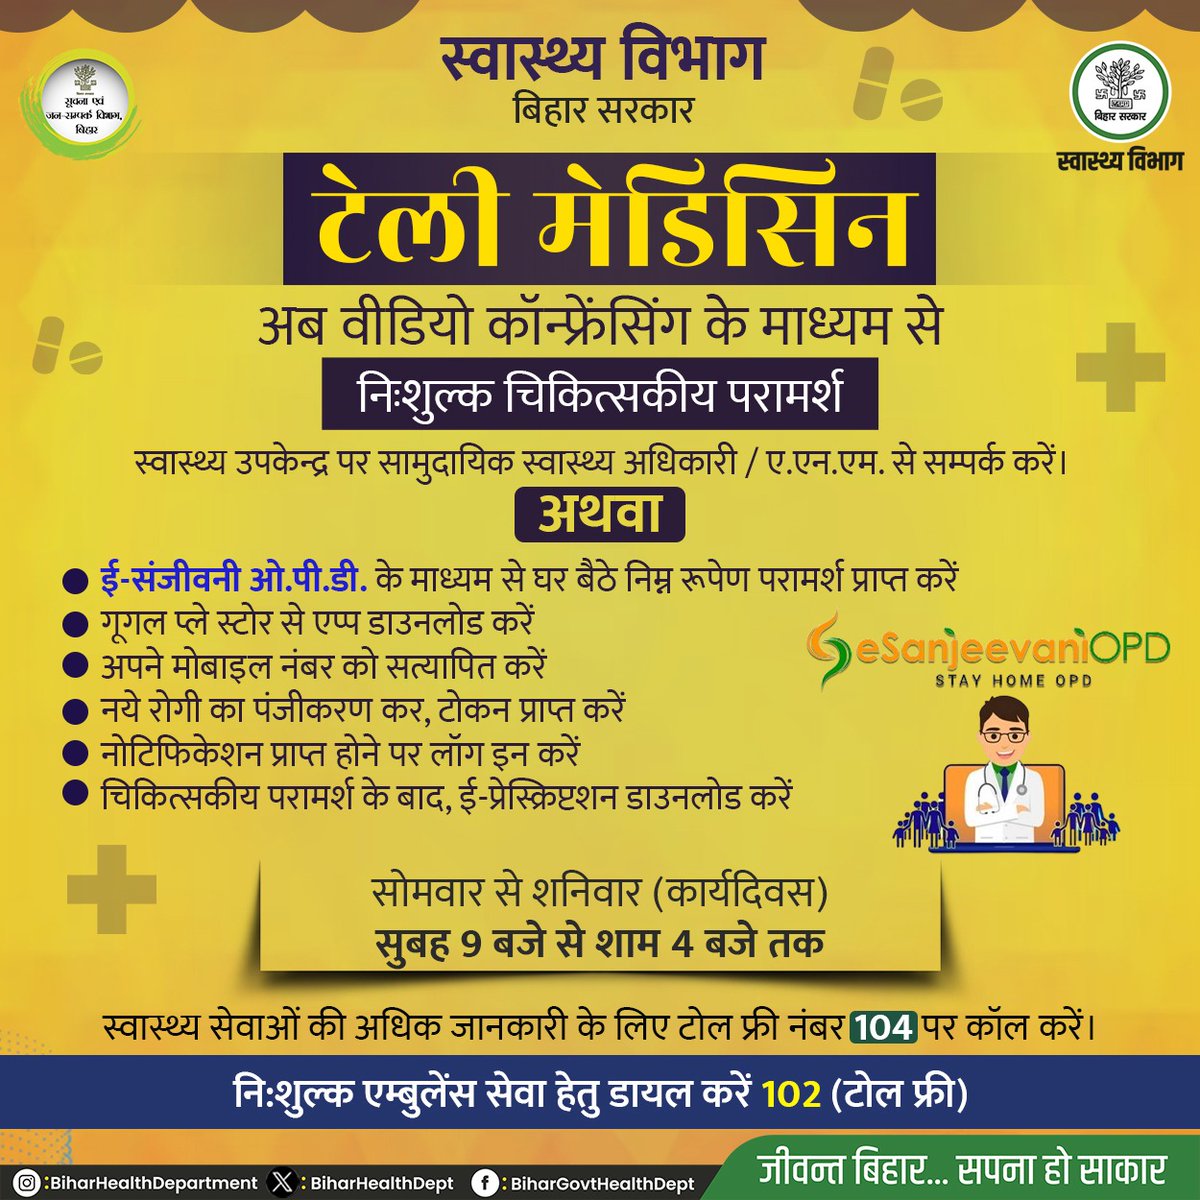 अब वीडियो कॉन्फ्रेंसिंग के माध्यम से निःशुल्क चिकित्सकीय परामर्श प्राप्त करें। @IPRD_Bihar @SHSBihar #BiharHealthDept